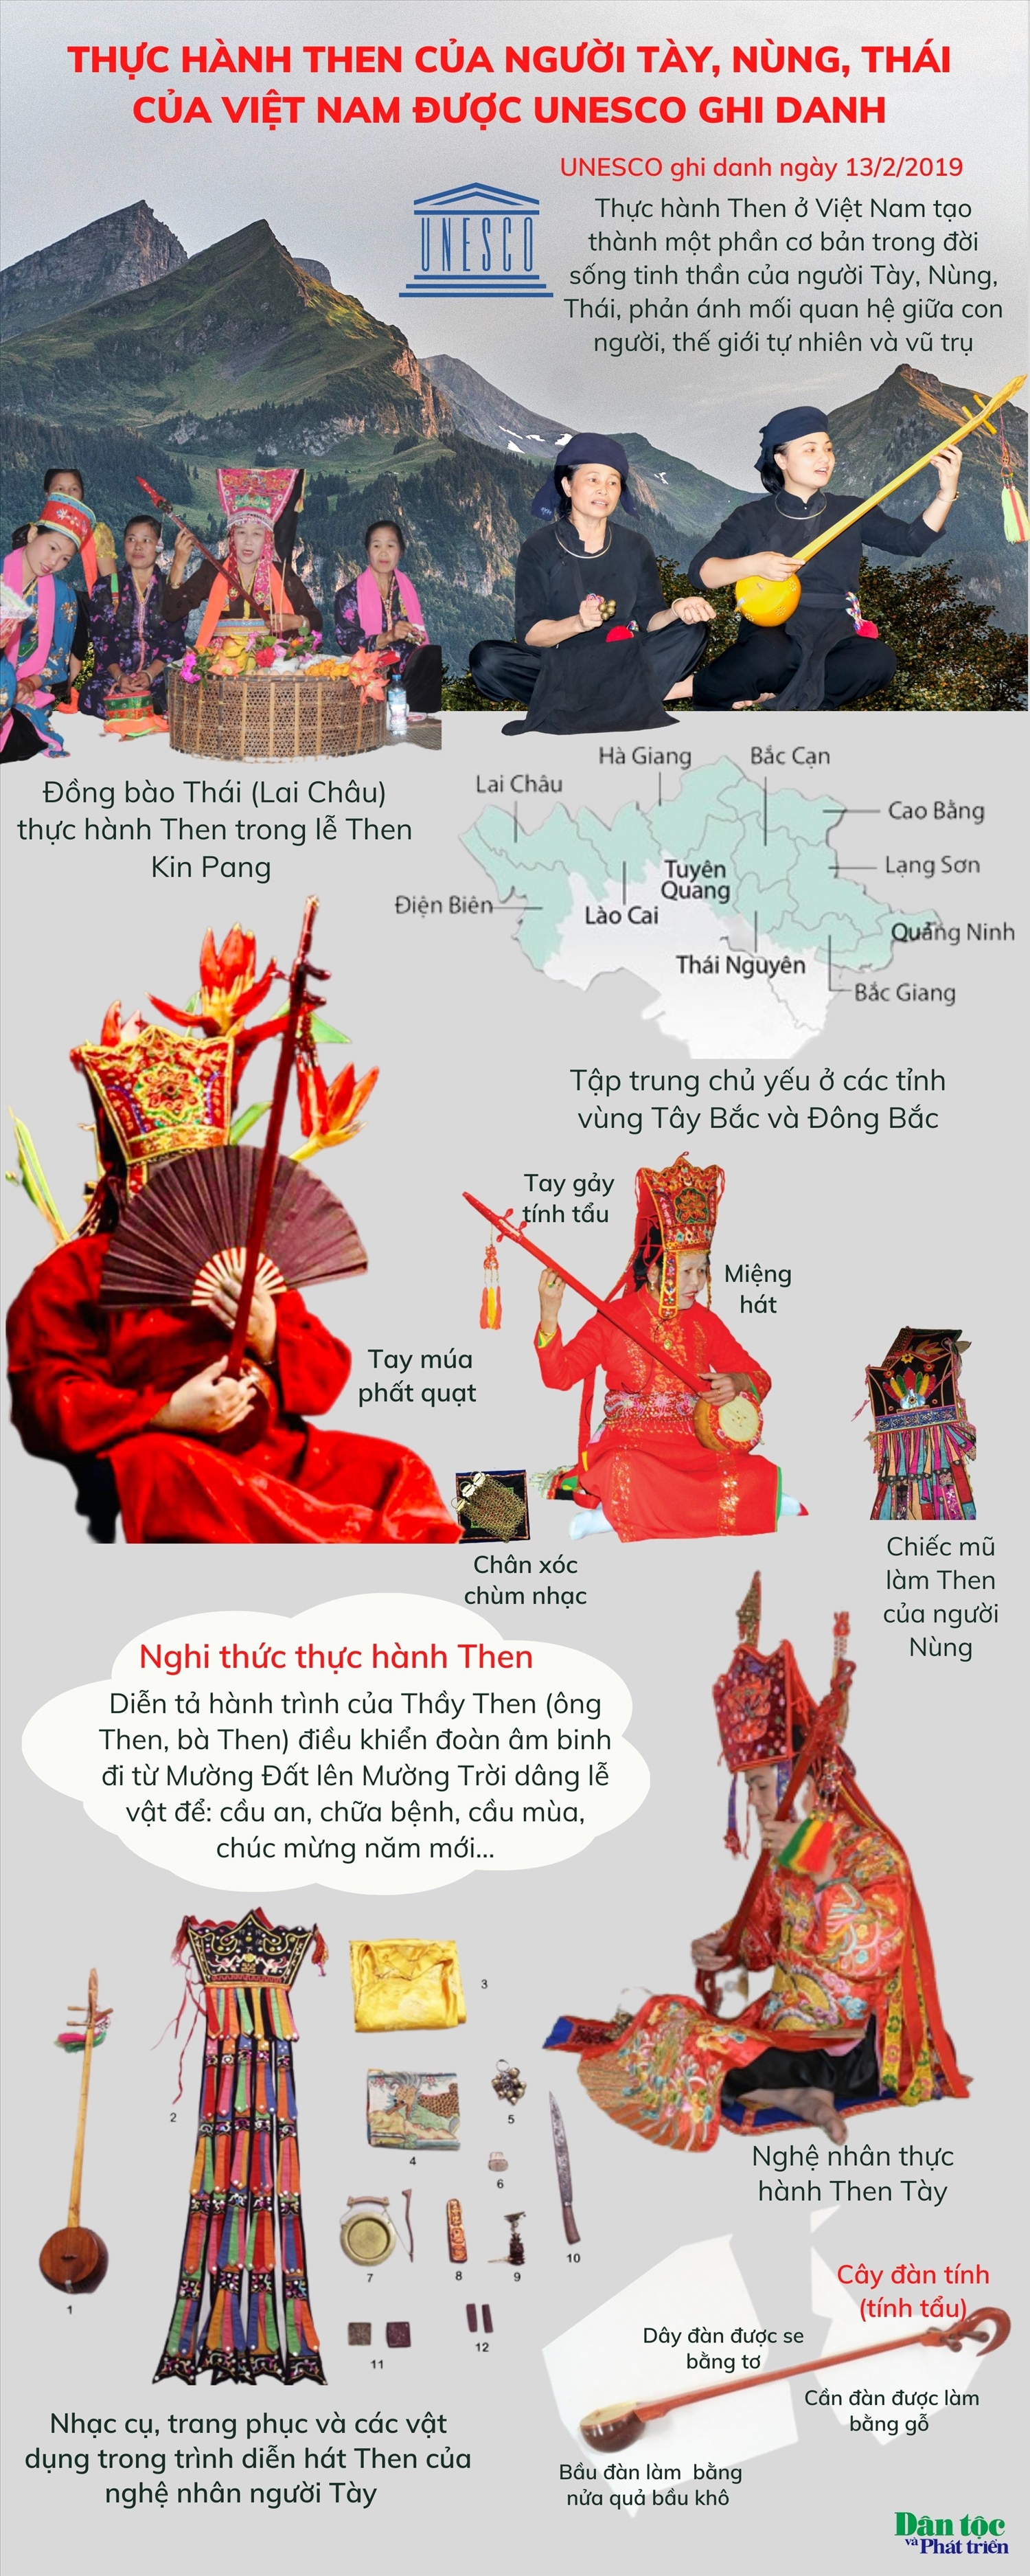 (Tin infographic) Di sản văn hóa Thực hành Then của người Tày, Nùng, Thái ở Việt Nam được UNESCO ghi danh